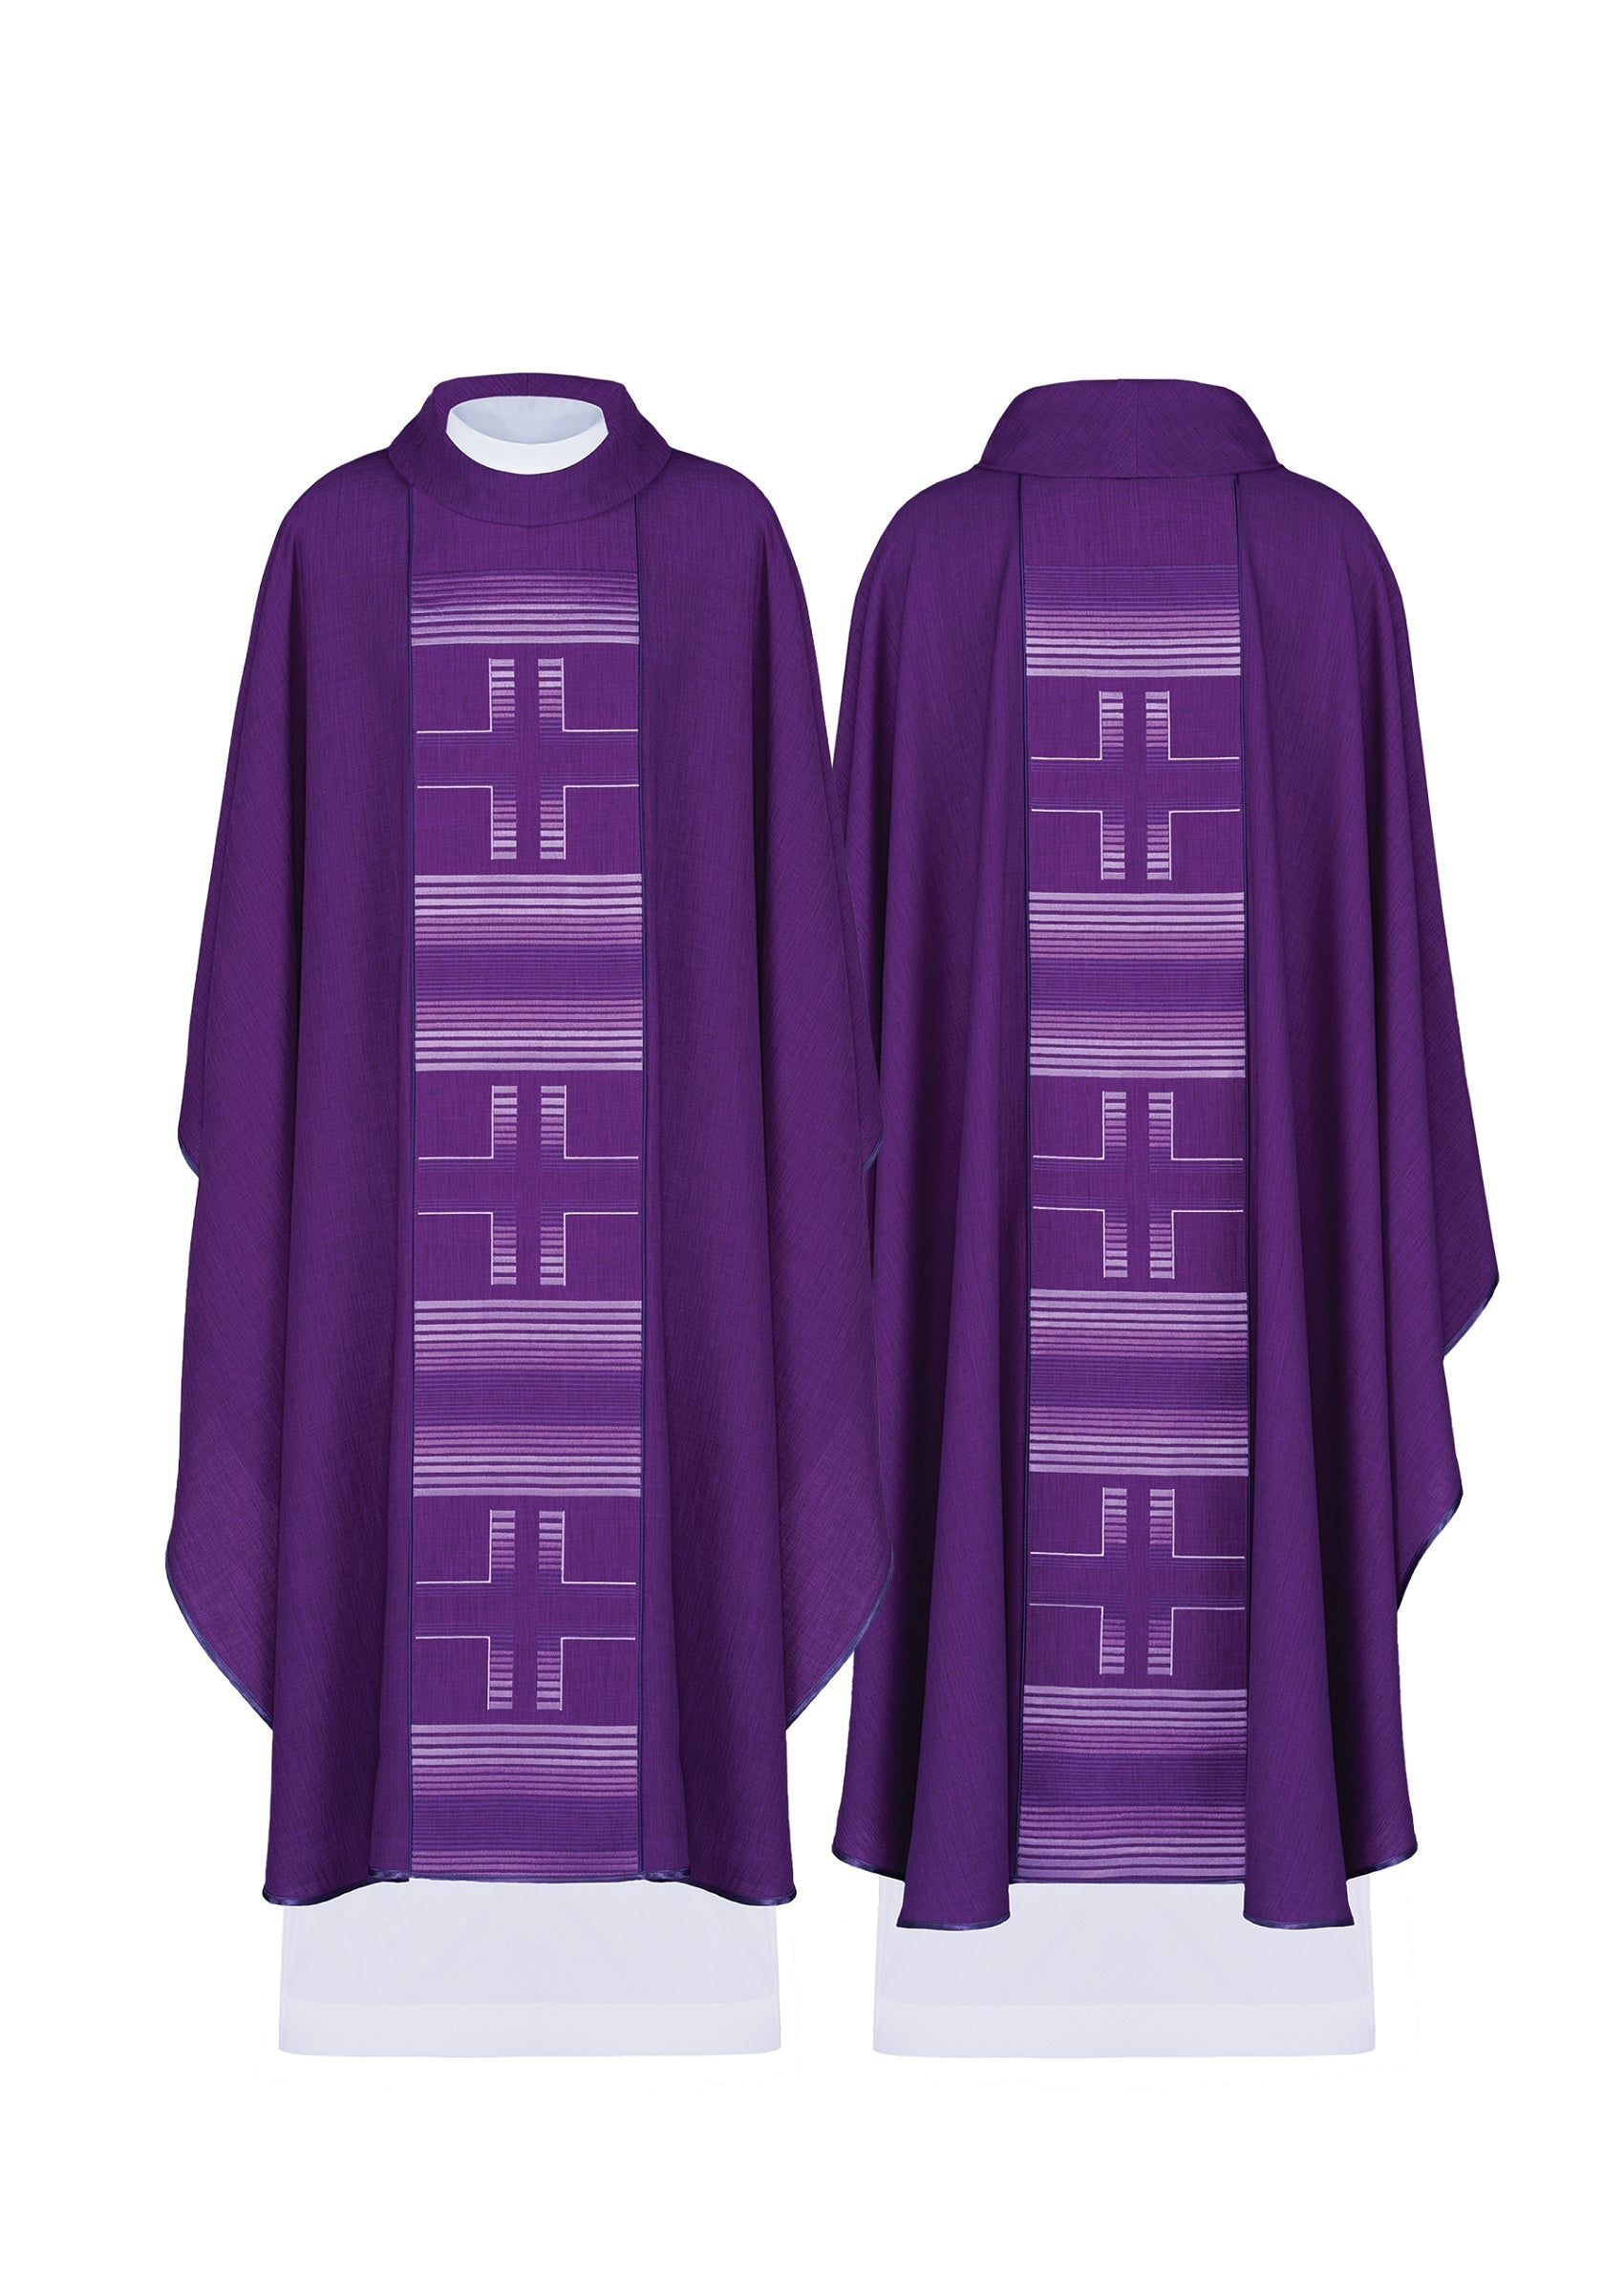 Ornat haftowany z Krzyżami w kolorze fioletowym